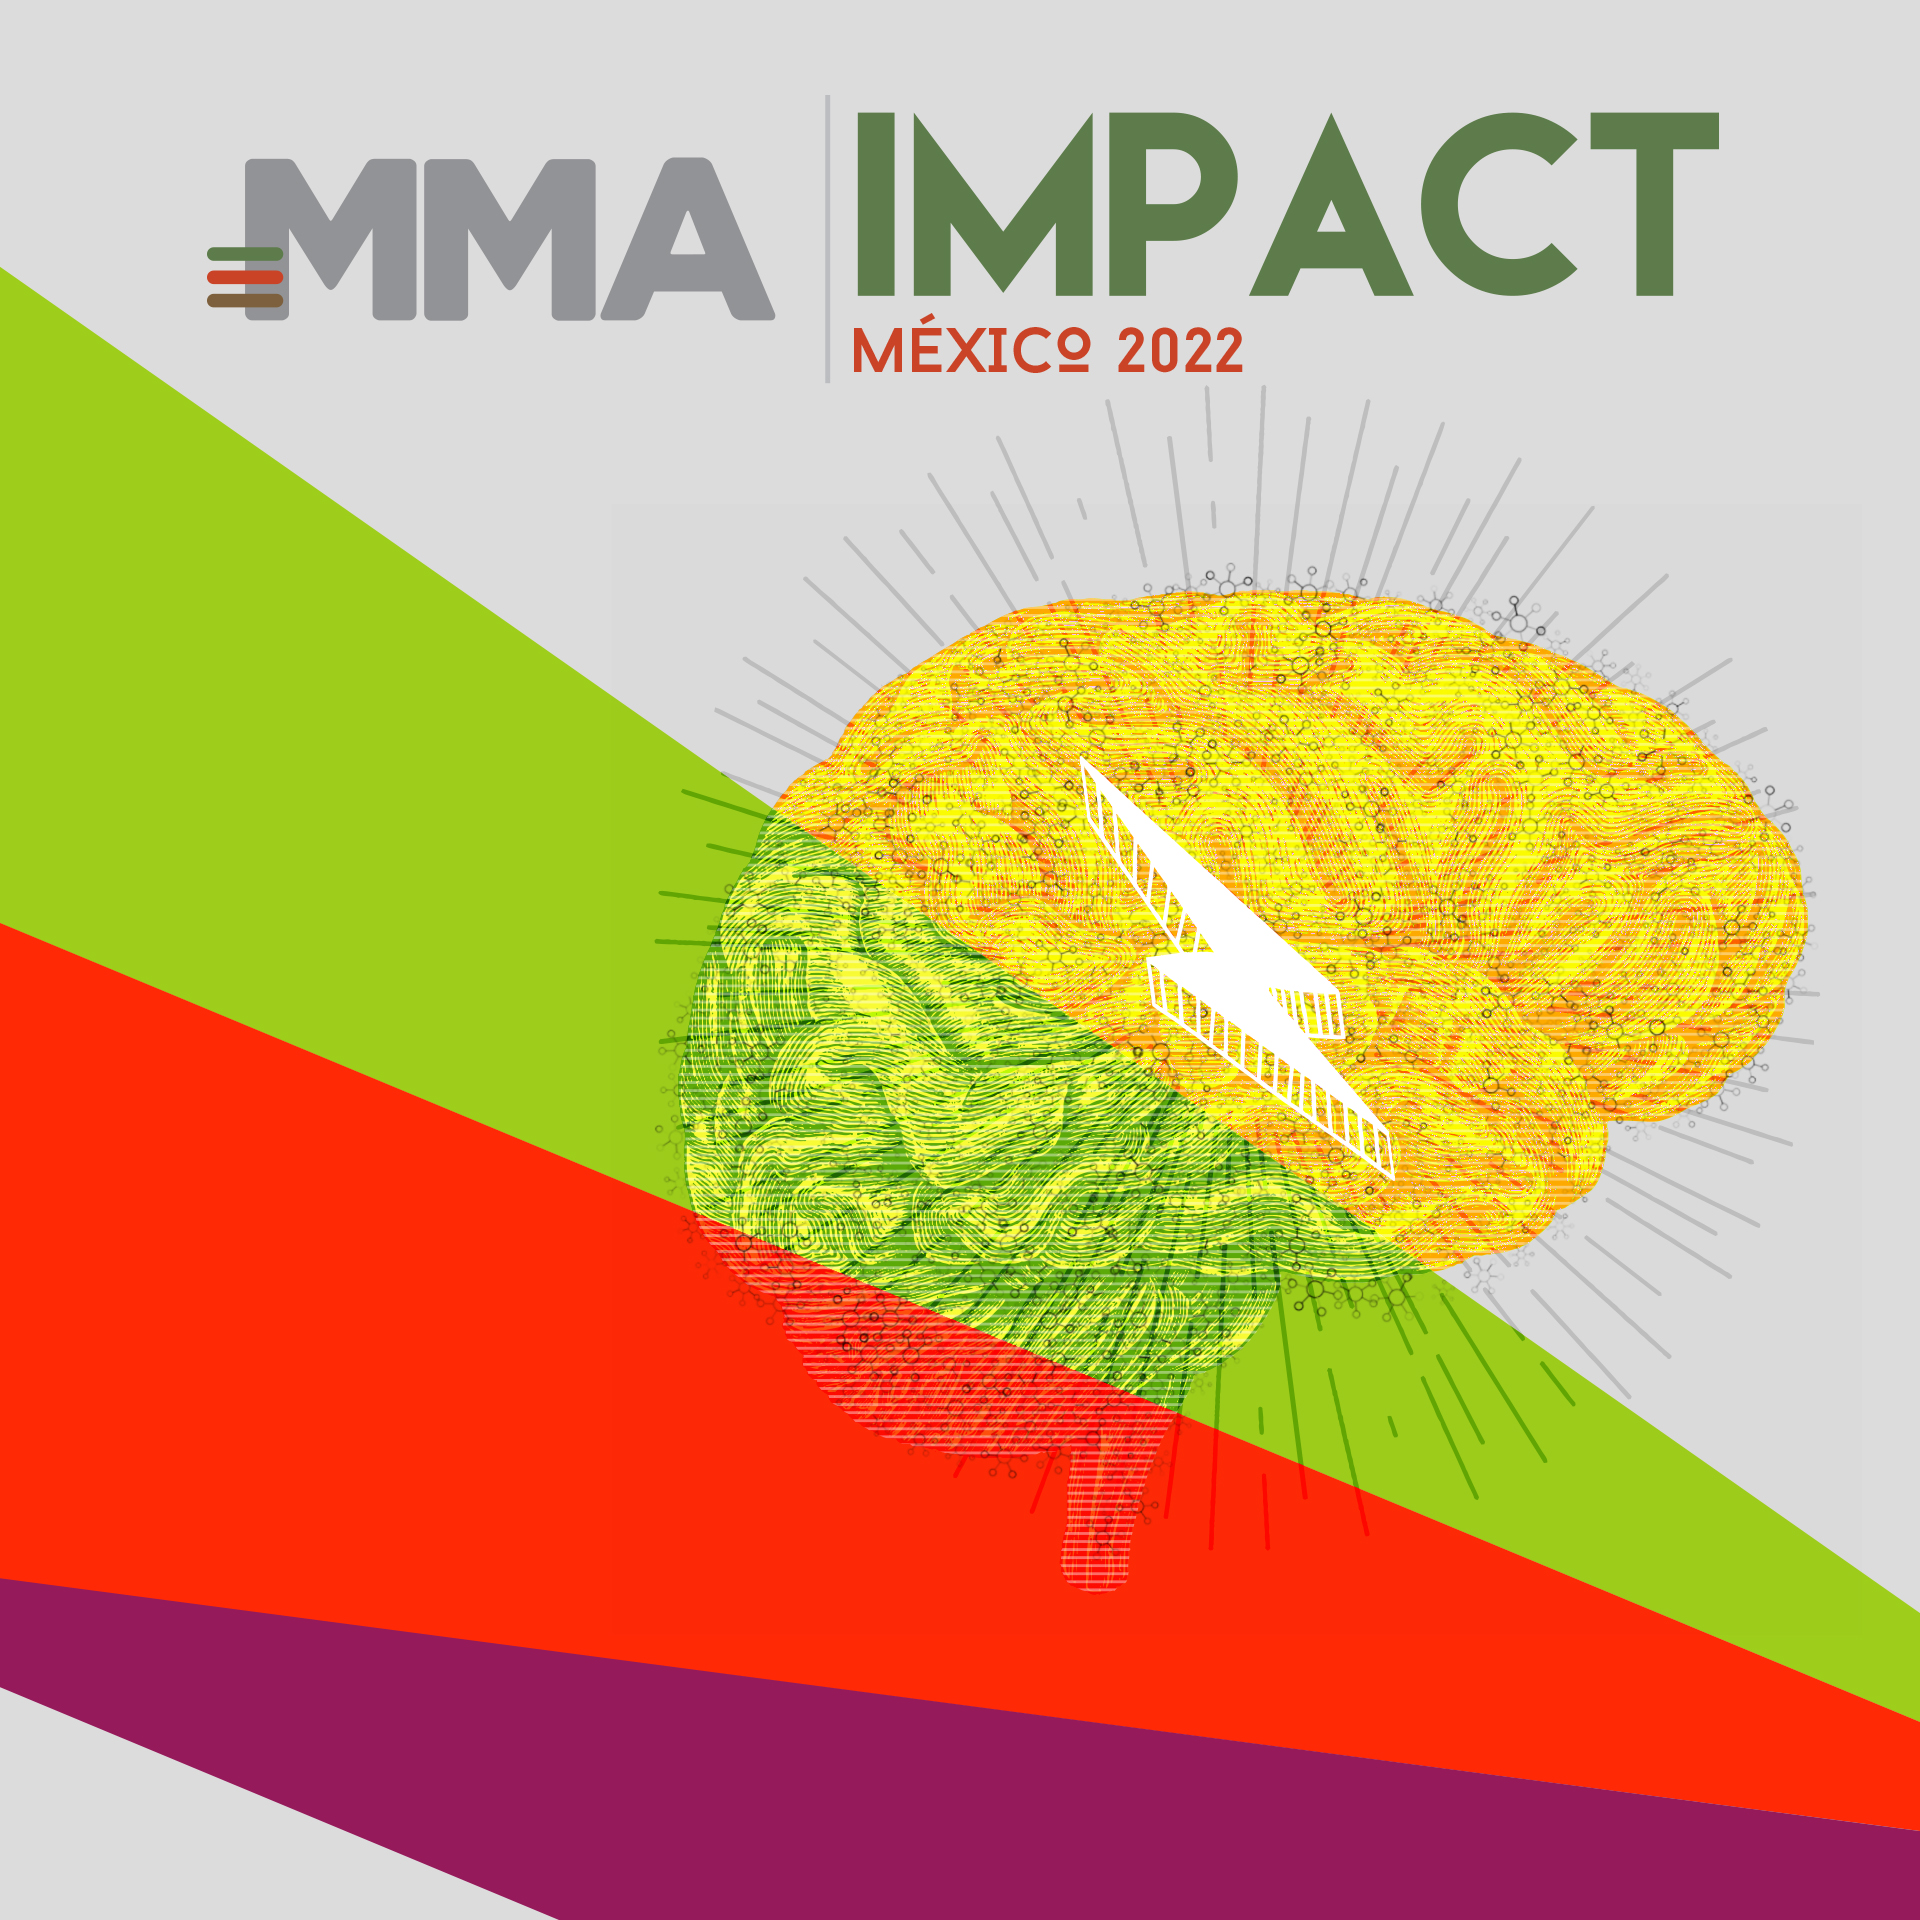 MMA Impact Mexico 2022